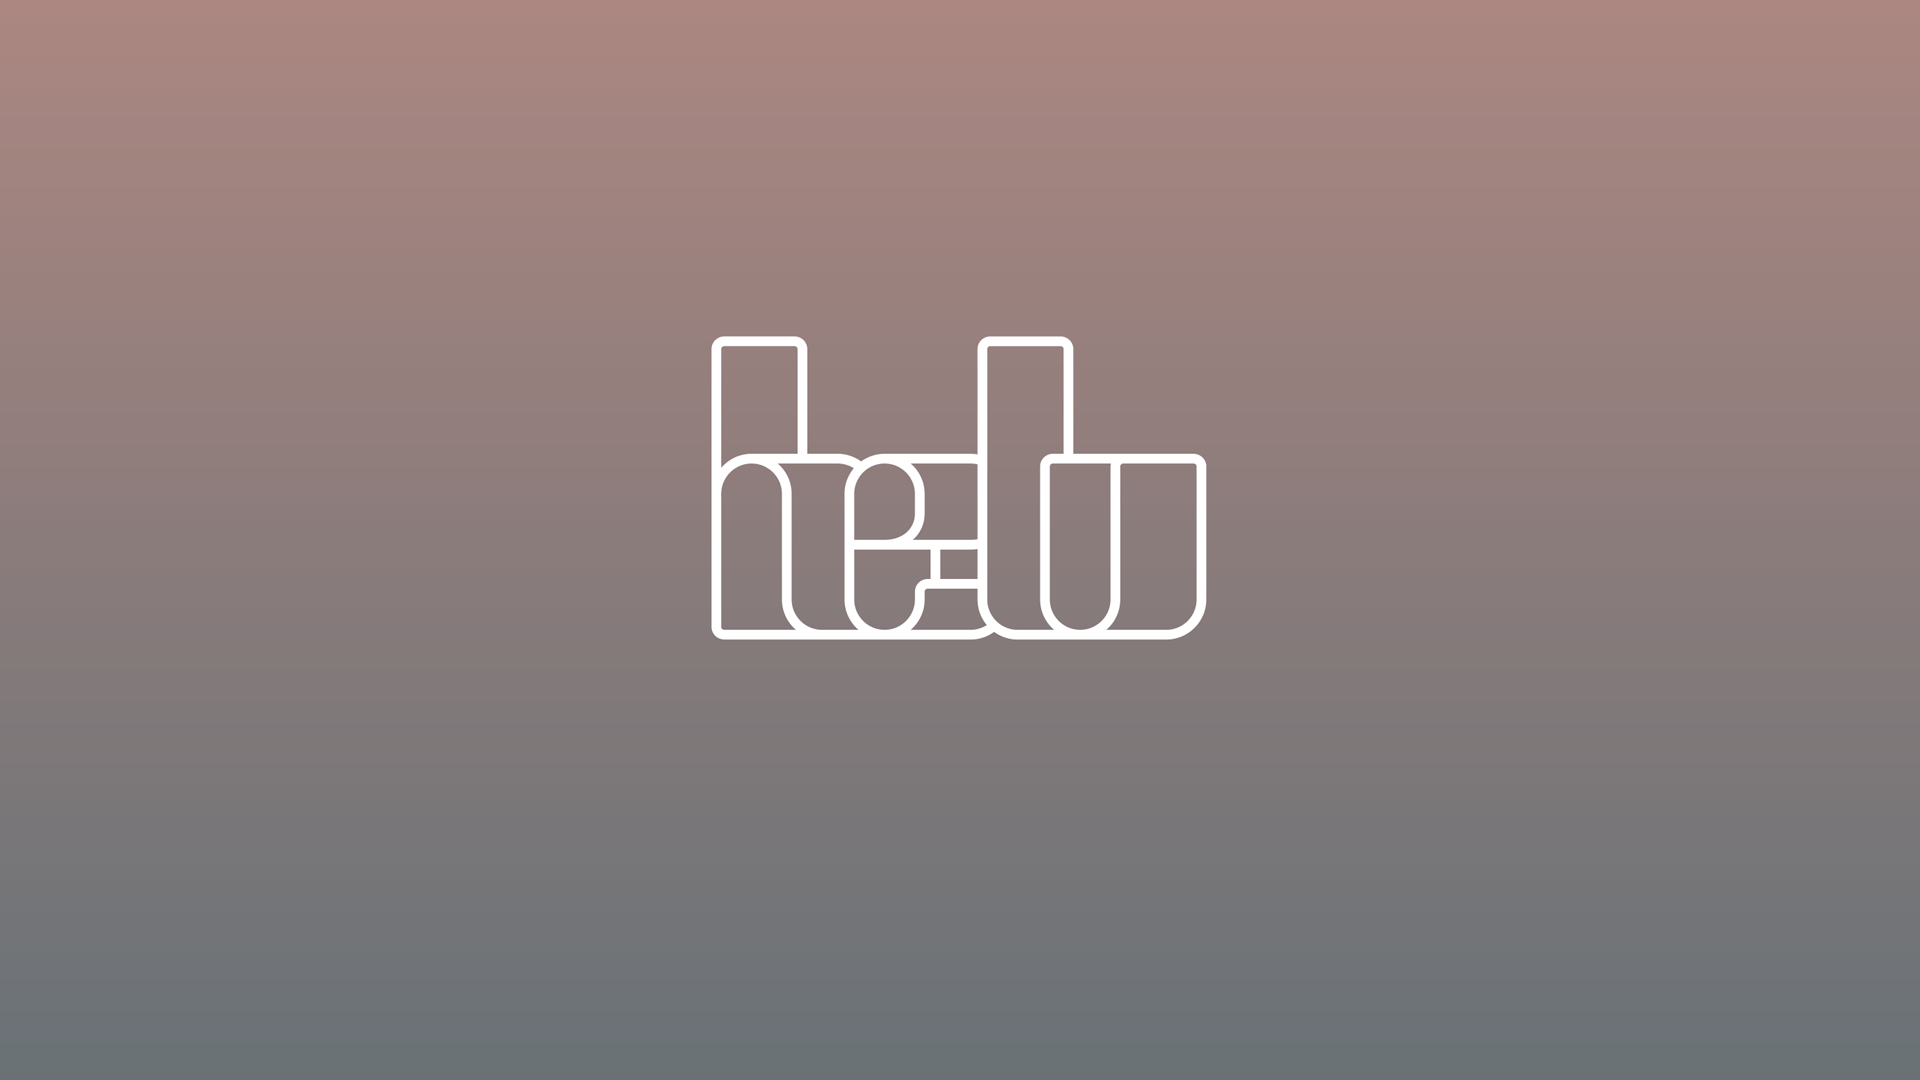 Helu, brand and UI